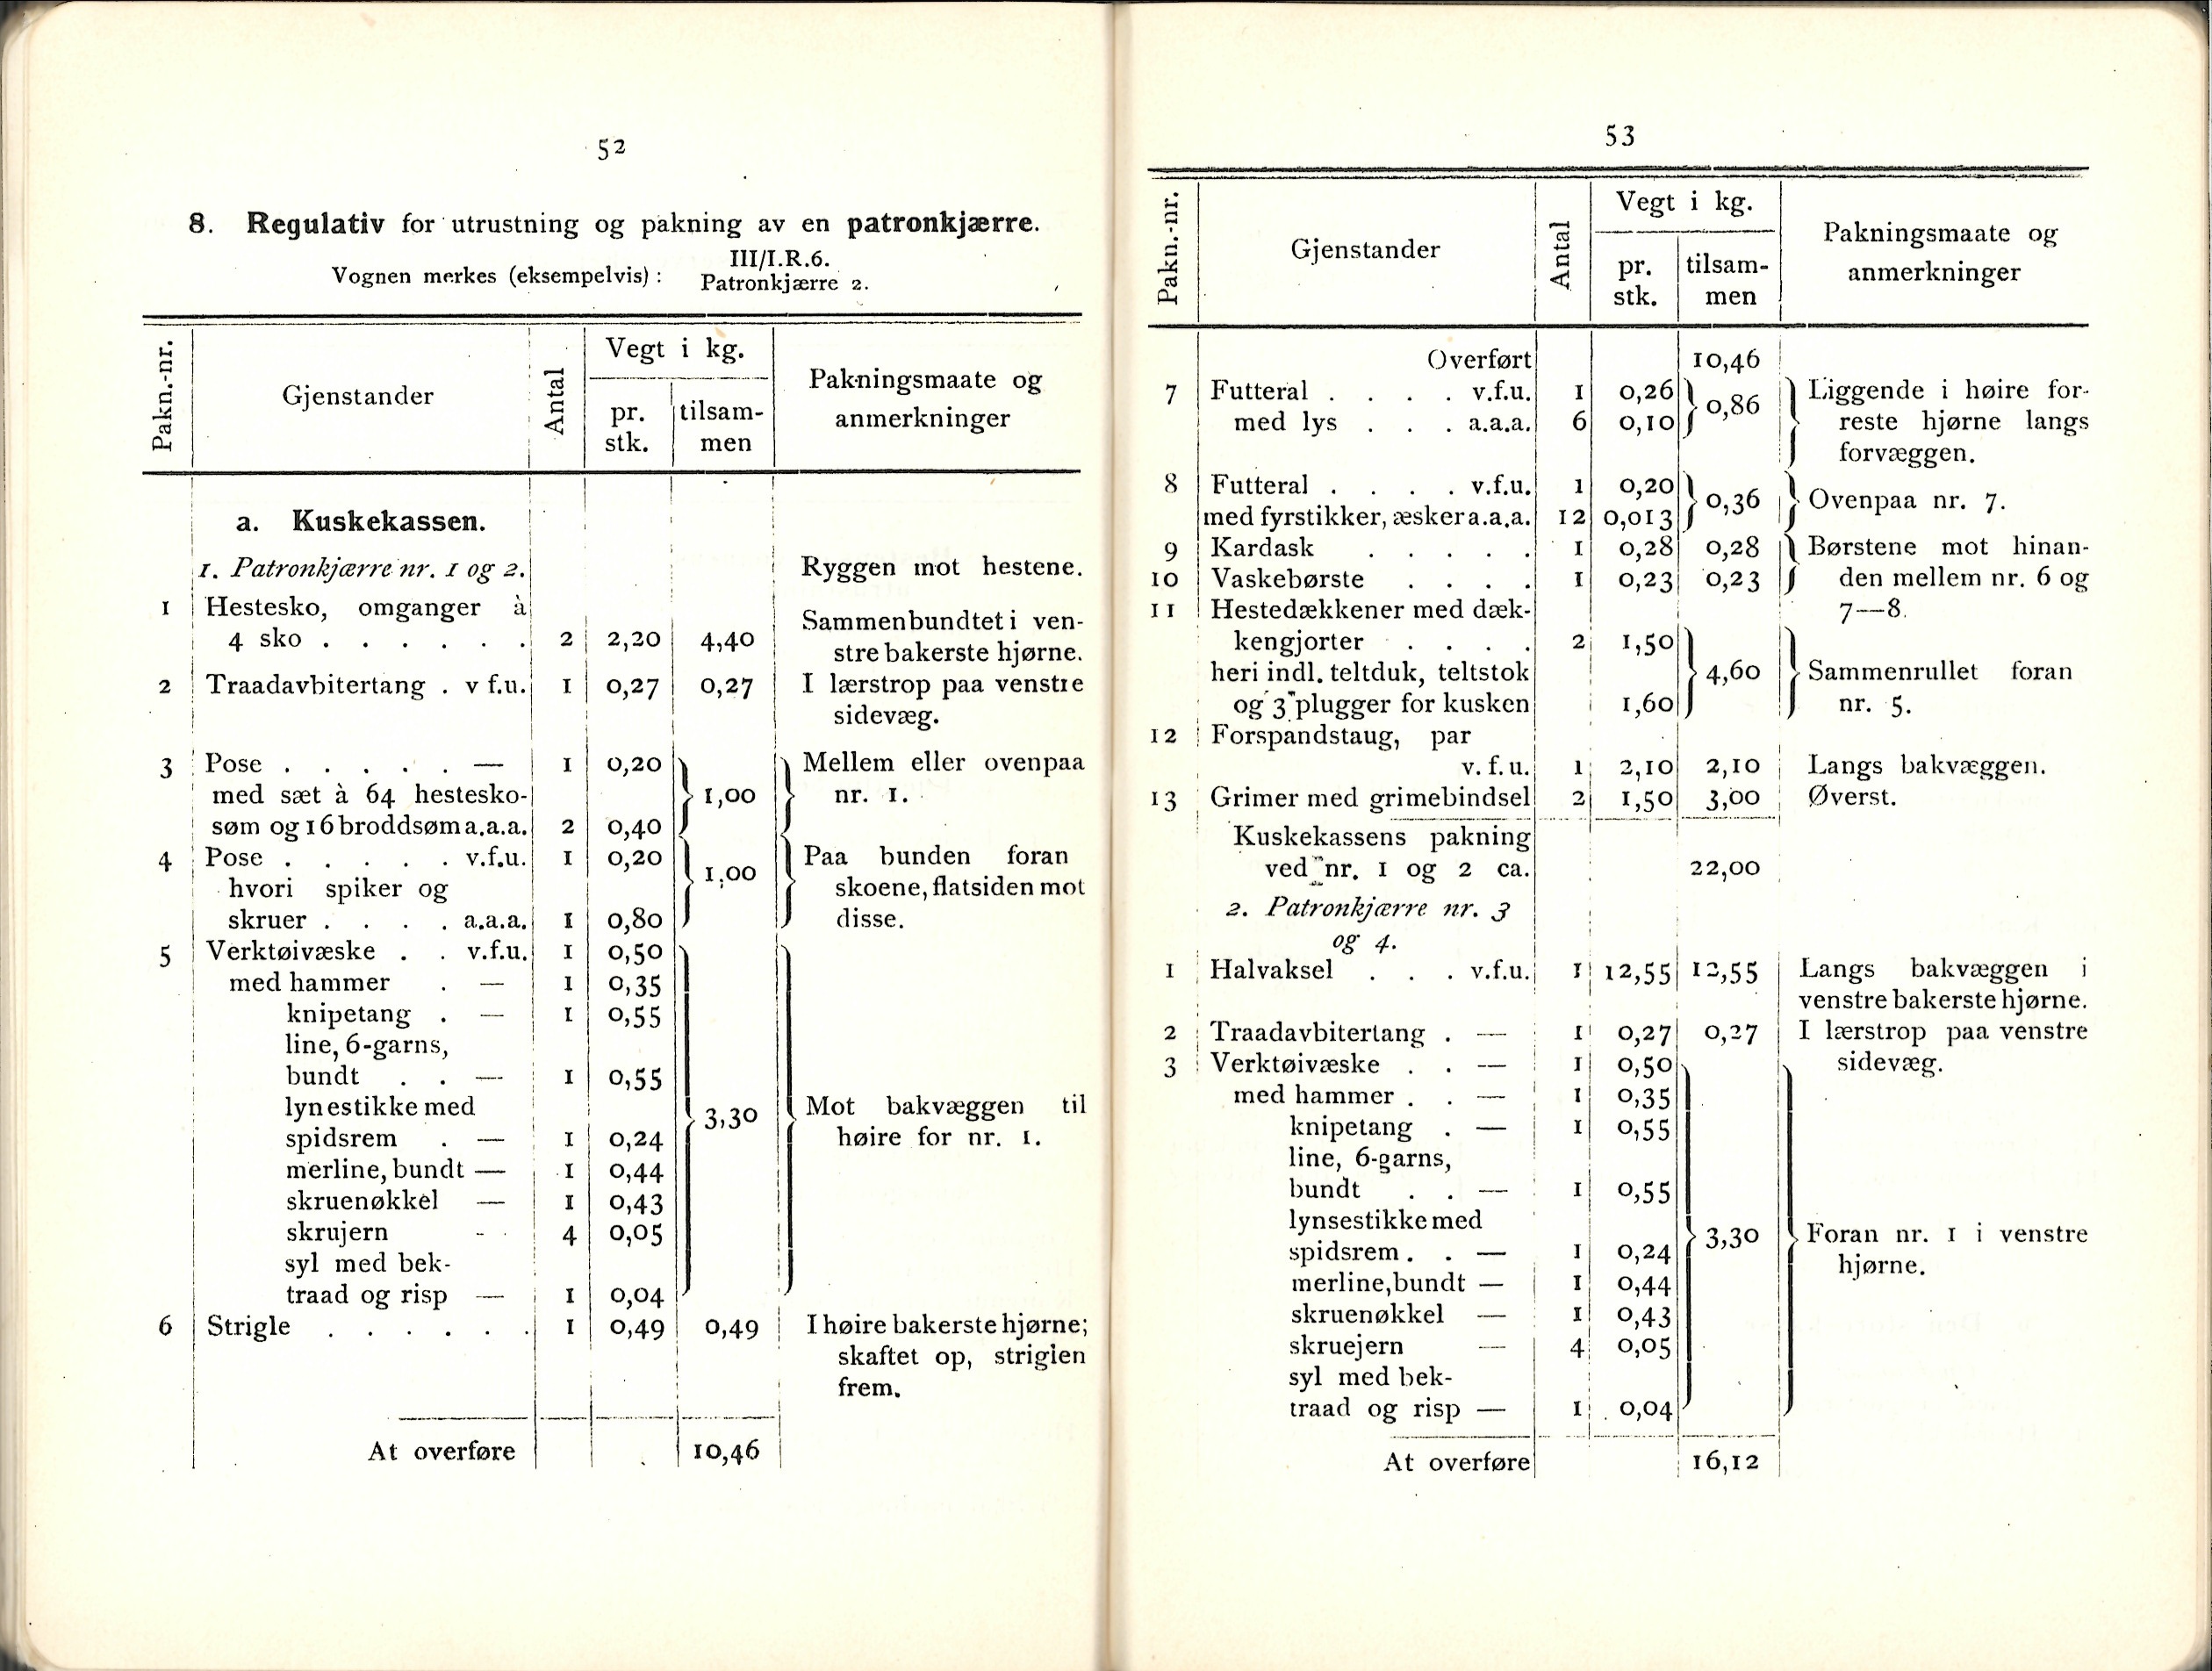 ./doc/reglement/Utrustning/Utrustnings-og-Pakningsplan-1917-11.jpg